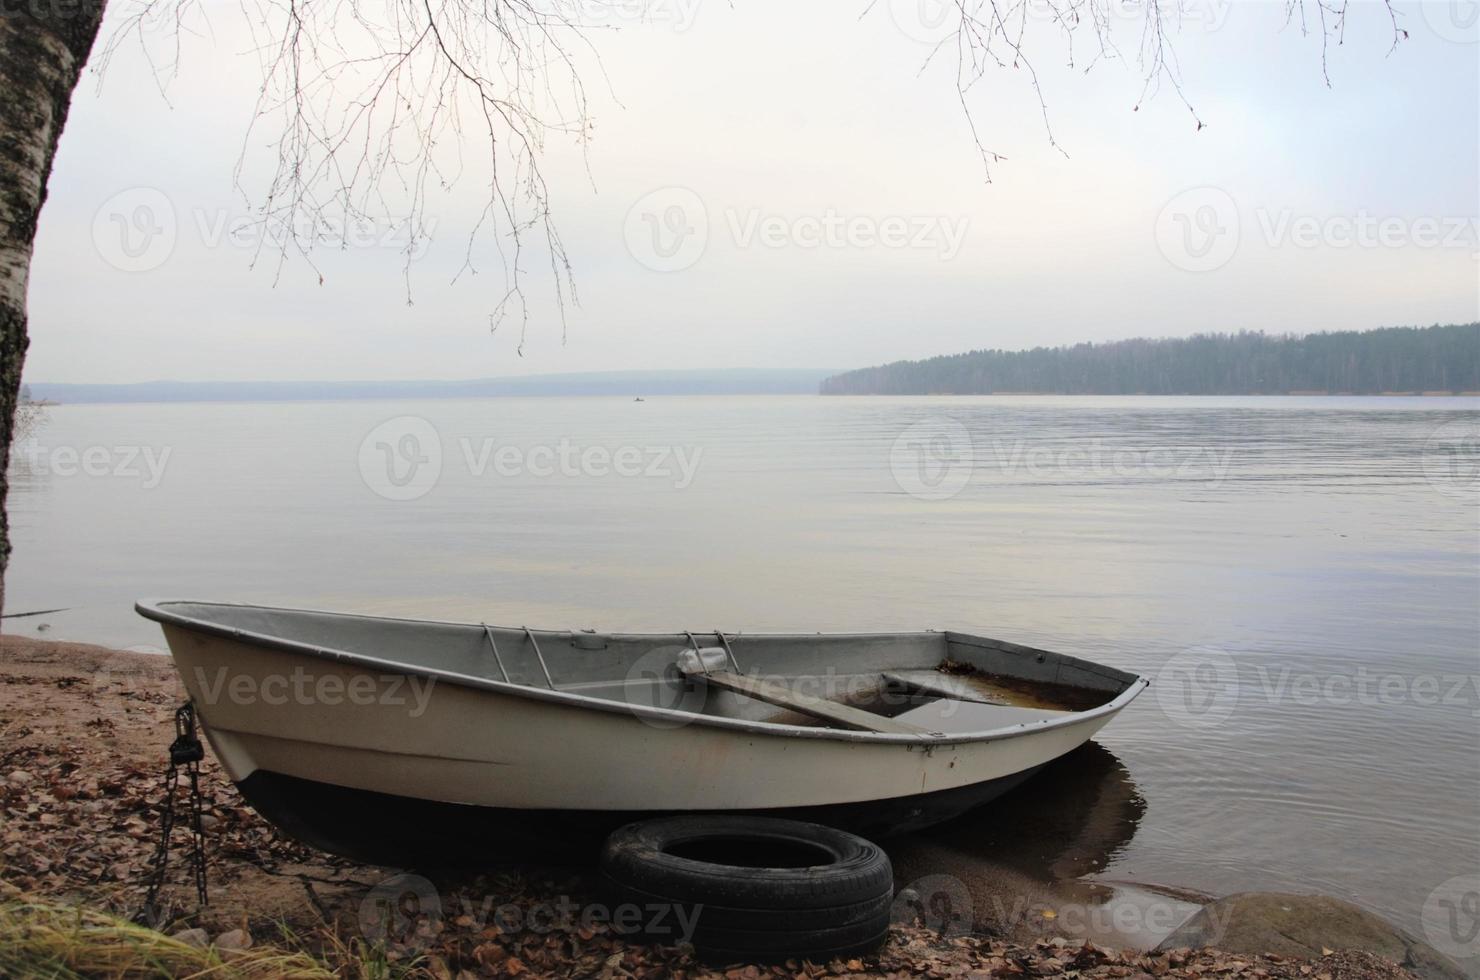 boot aan de oever van een rustig meer, landschap in neutrale kleuren foto